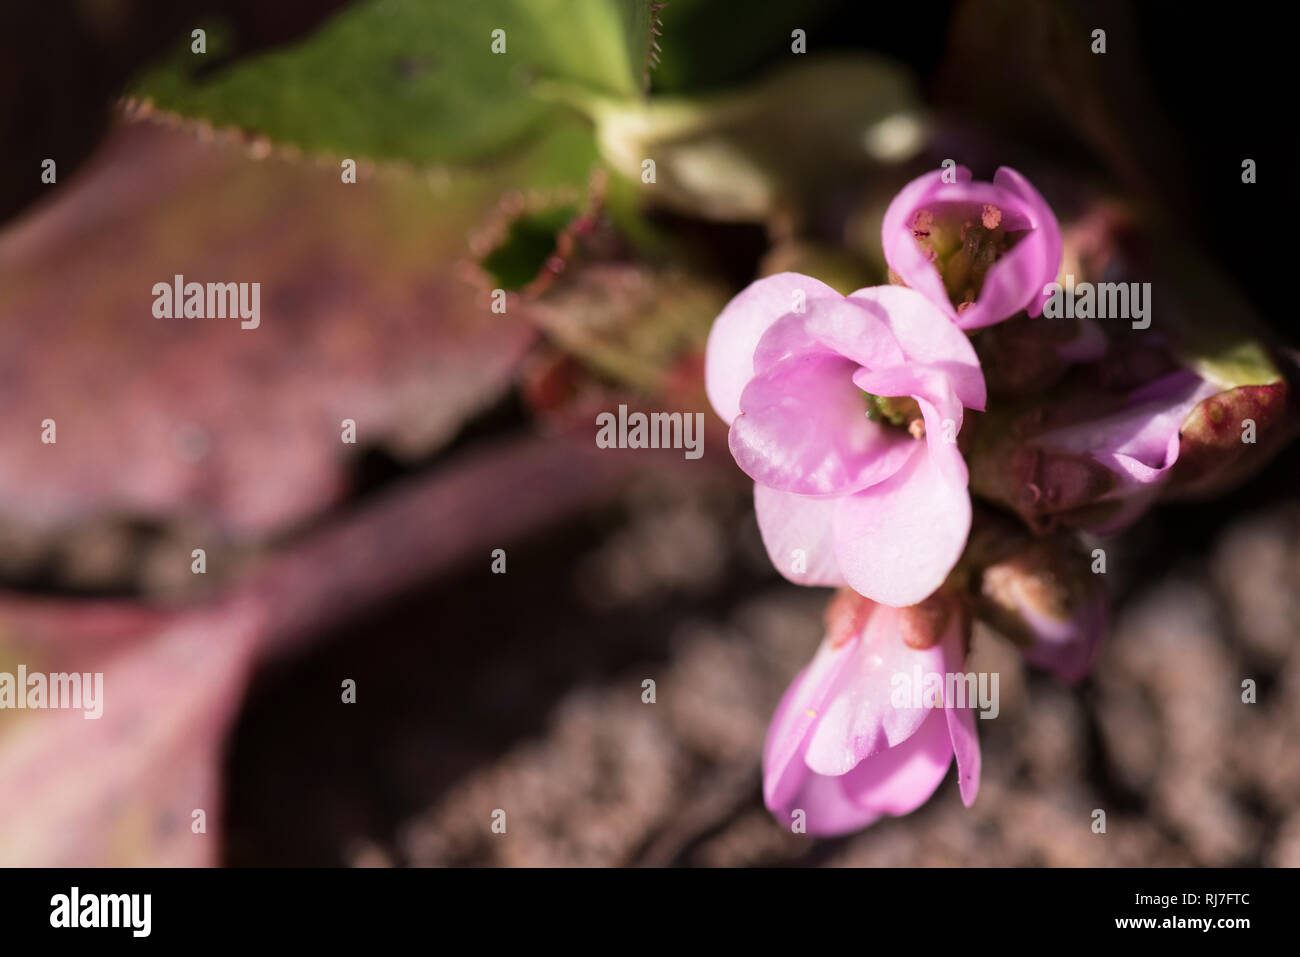 Frühblüher in der Natur, Zierrhabarber Blüten, close-up Foto Stock